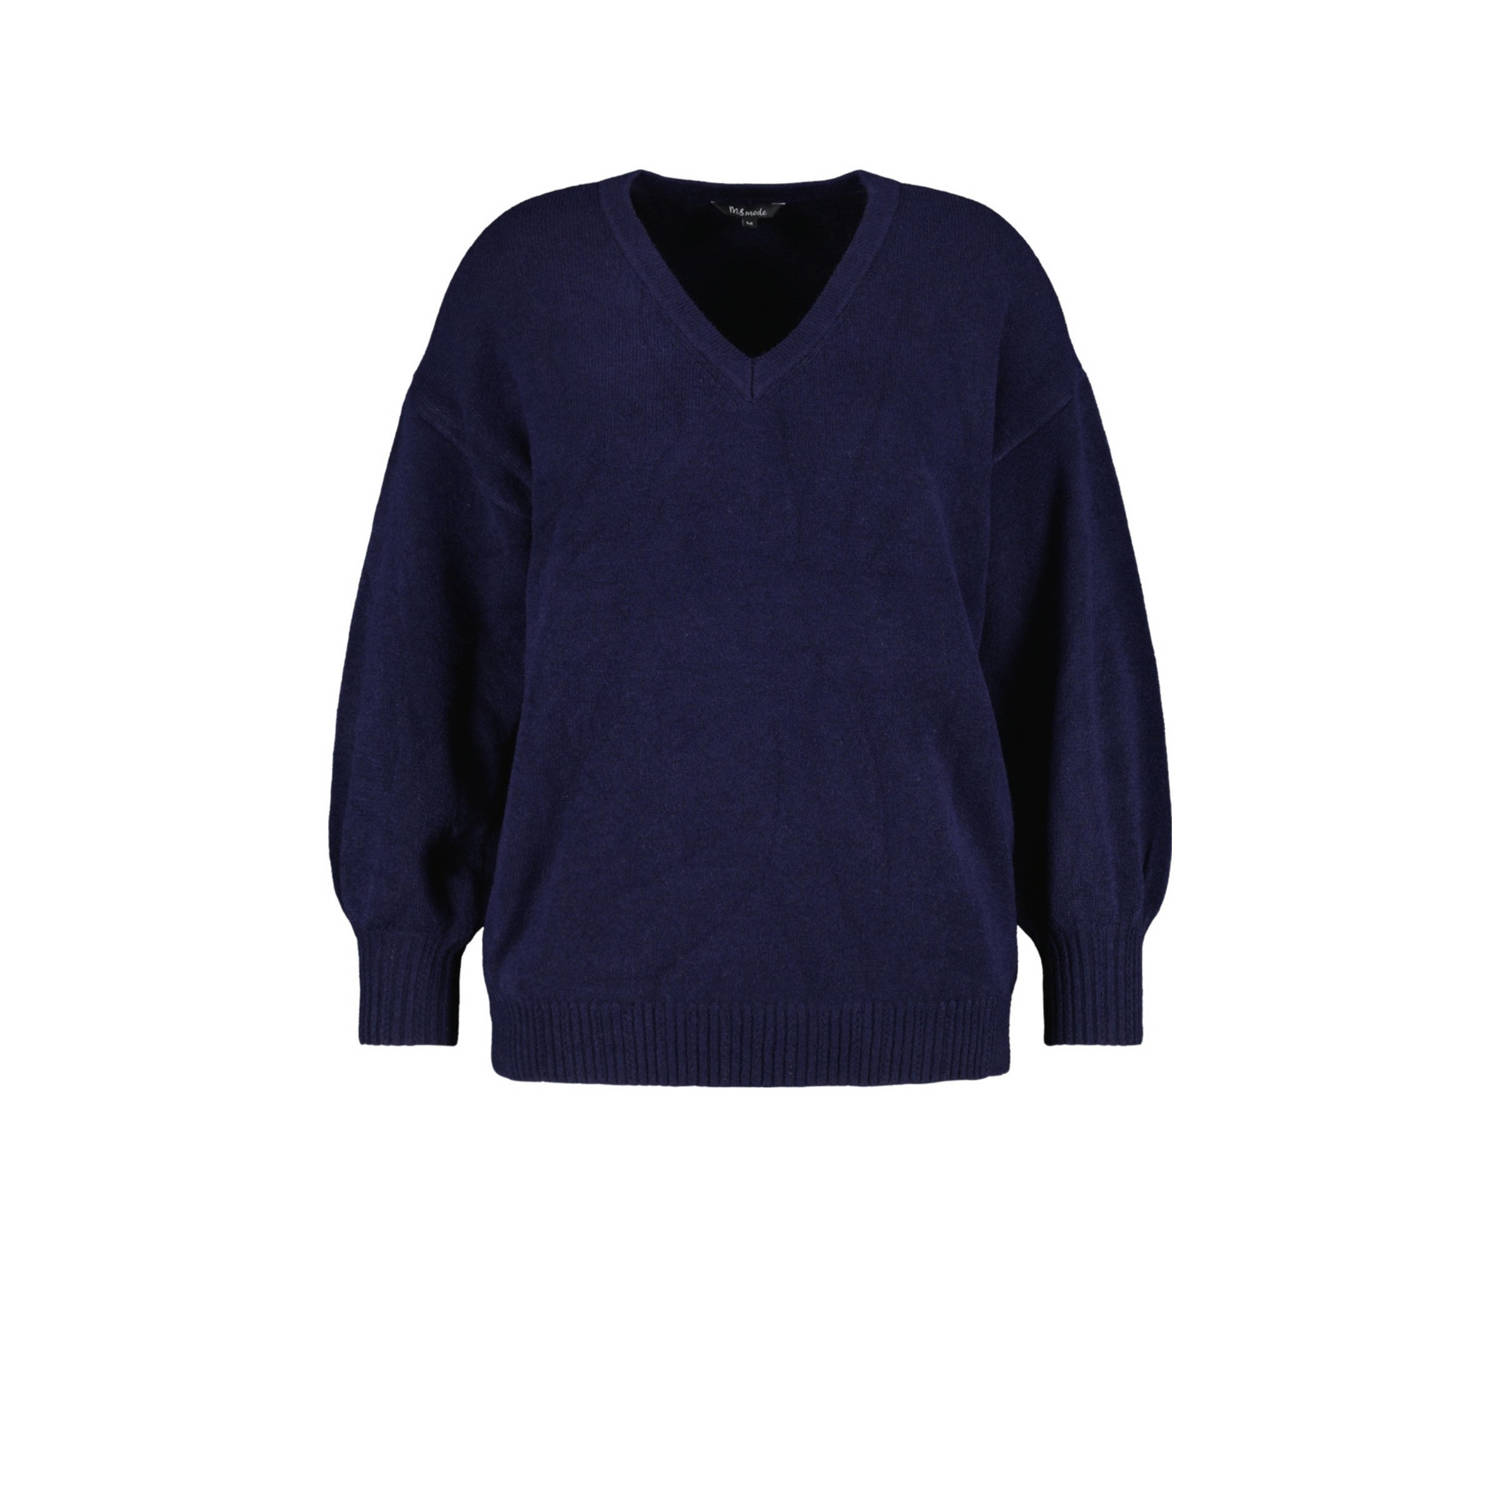 MS Mode fijngebreide trui donkerblauw